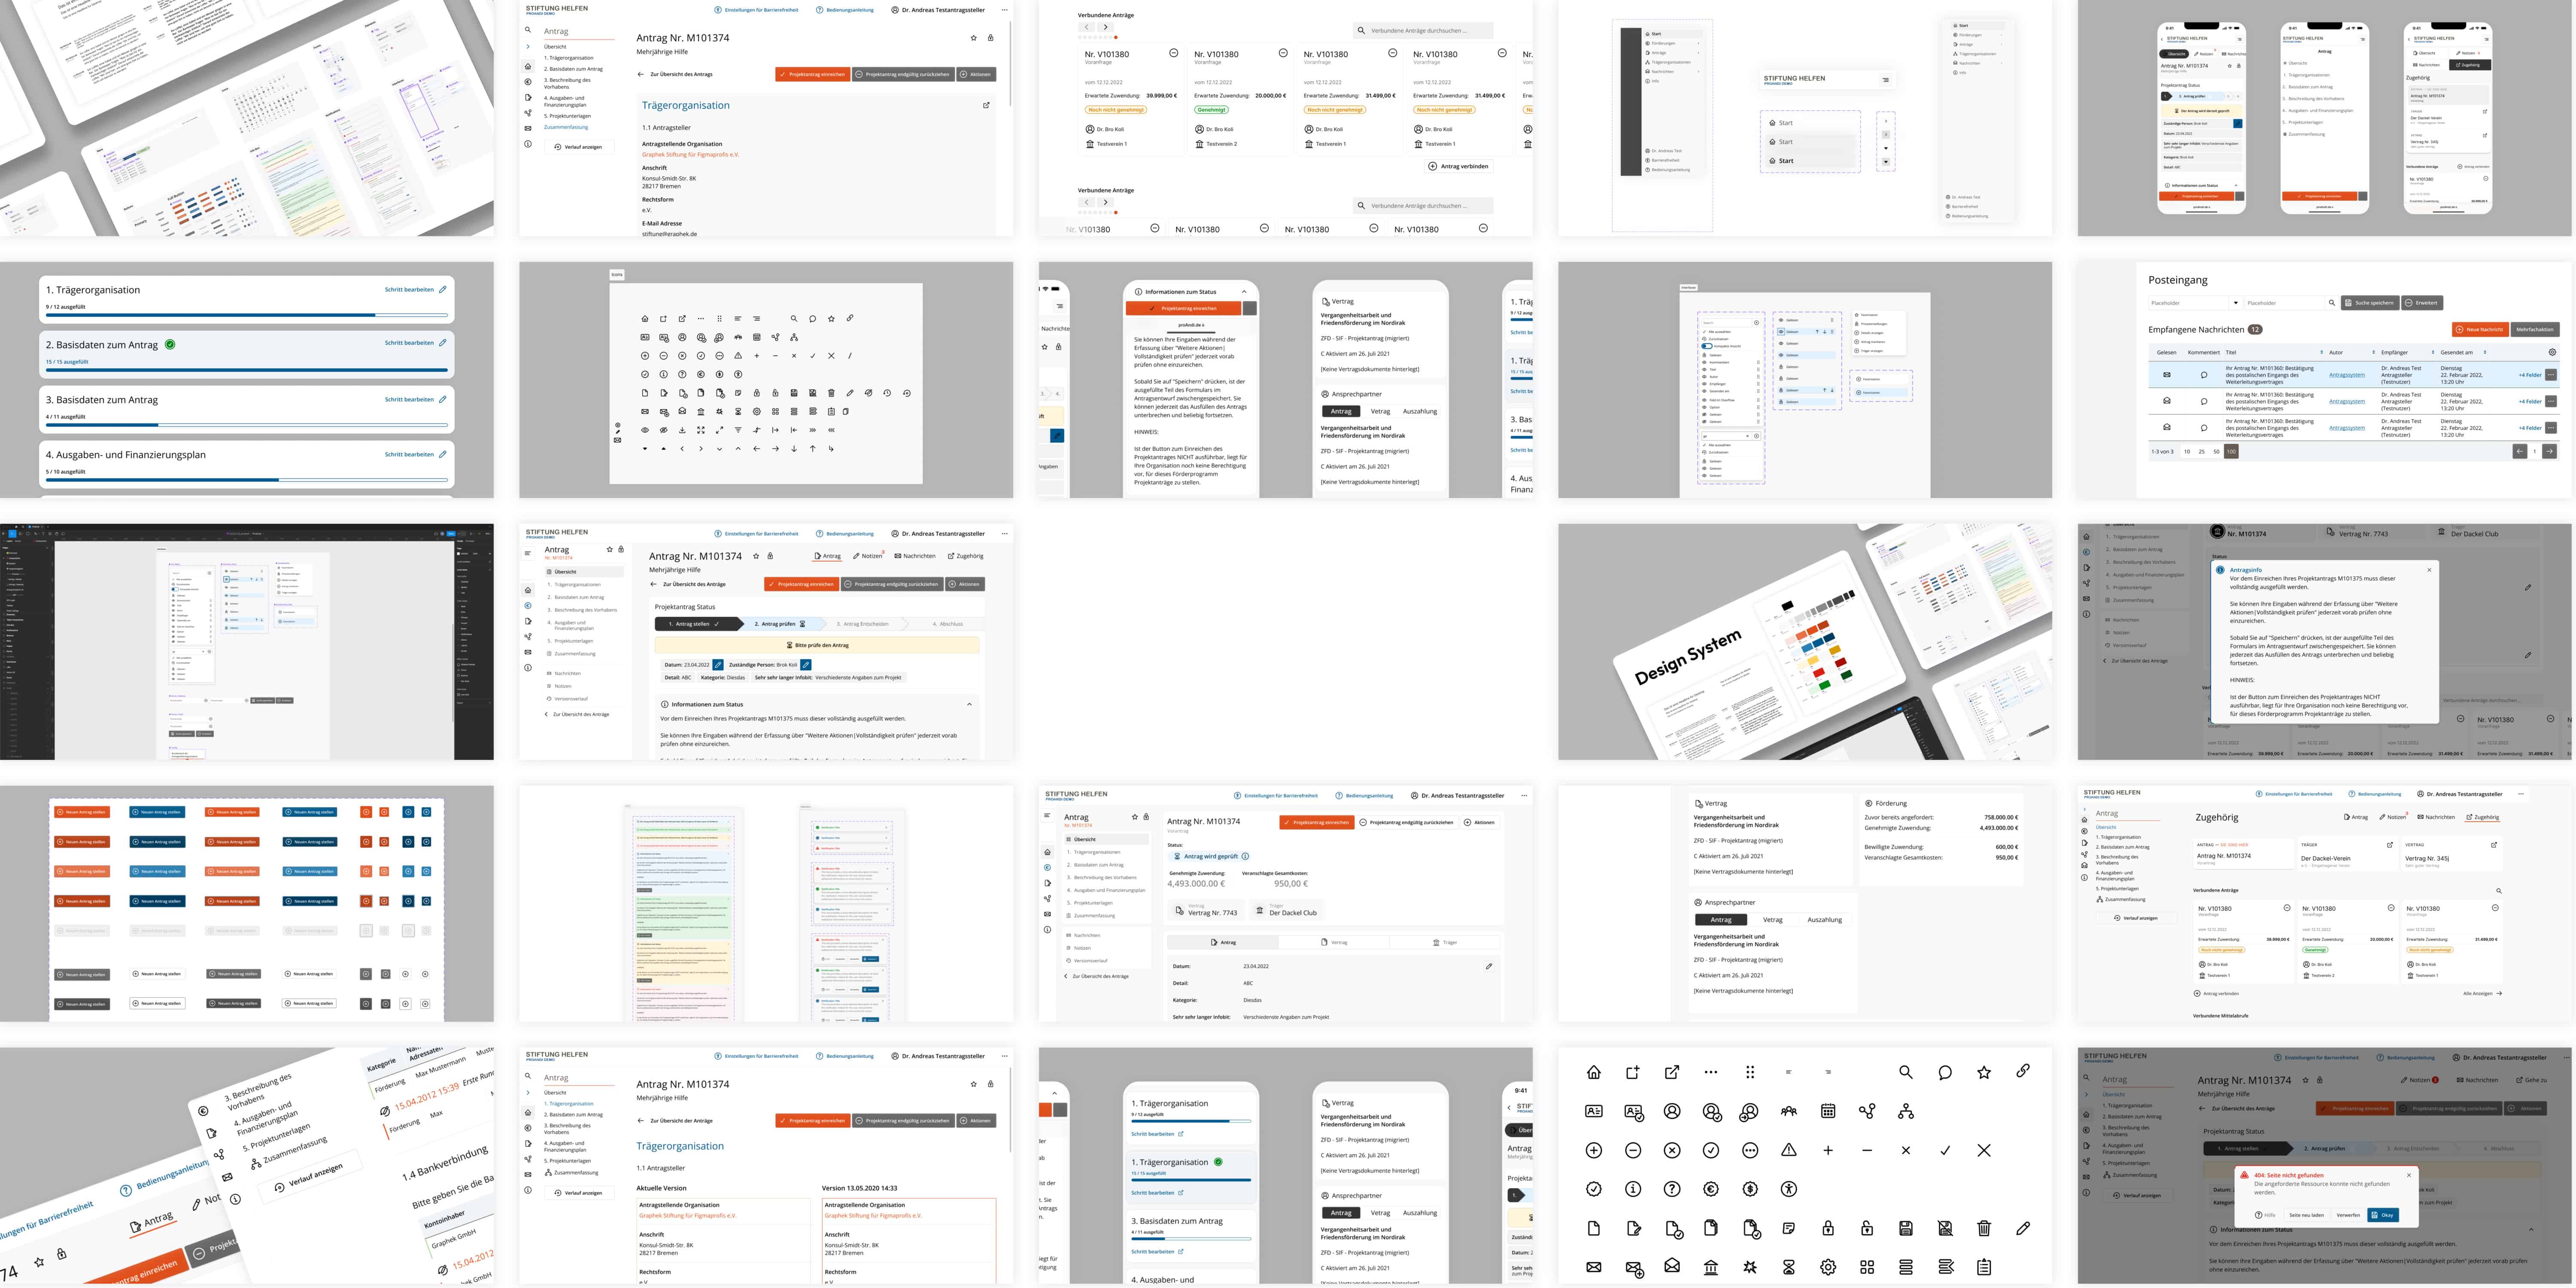 Collage von Screens aus einem UI / UX Design